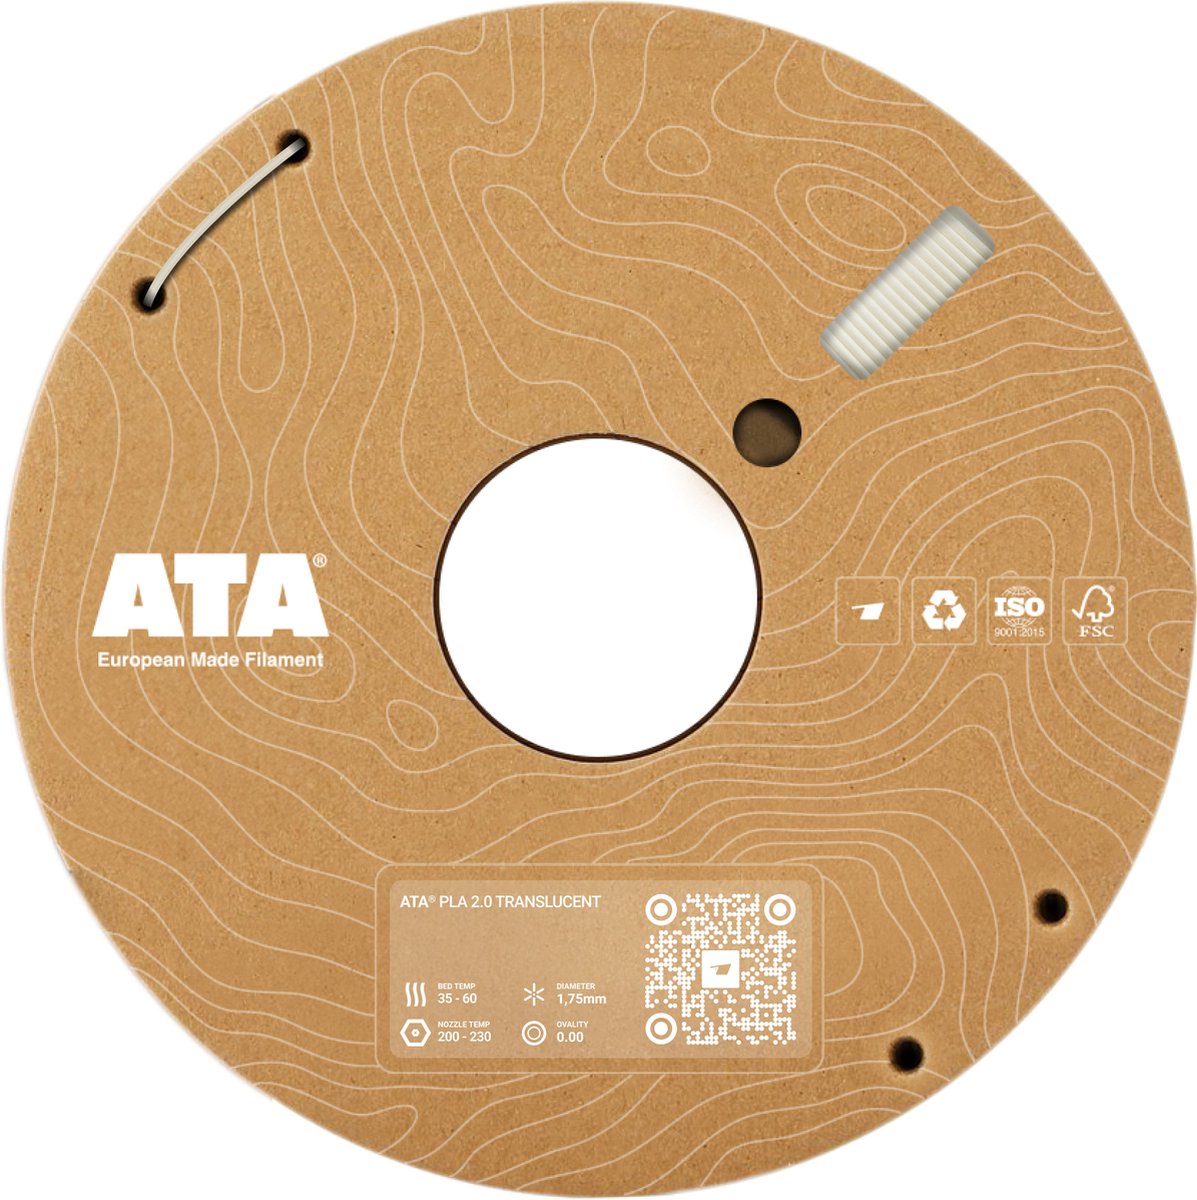 ATA® PLA 2.0 Translucent - PLA 3D Printer Filament - 1.75mm - 1 KG PLA Spool - Diameter Consistency Insights (DCI) - European Made Filament